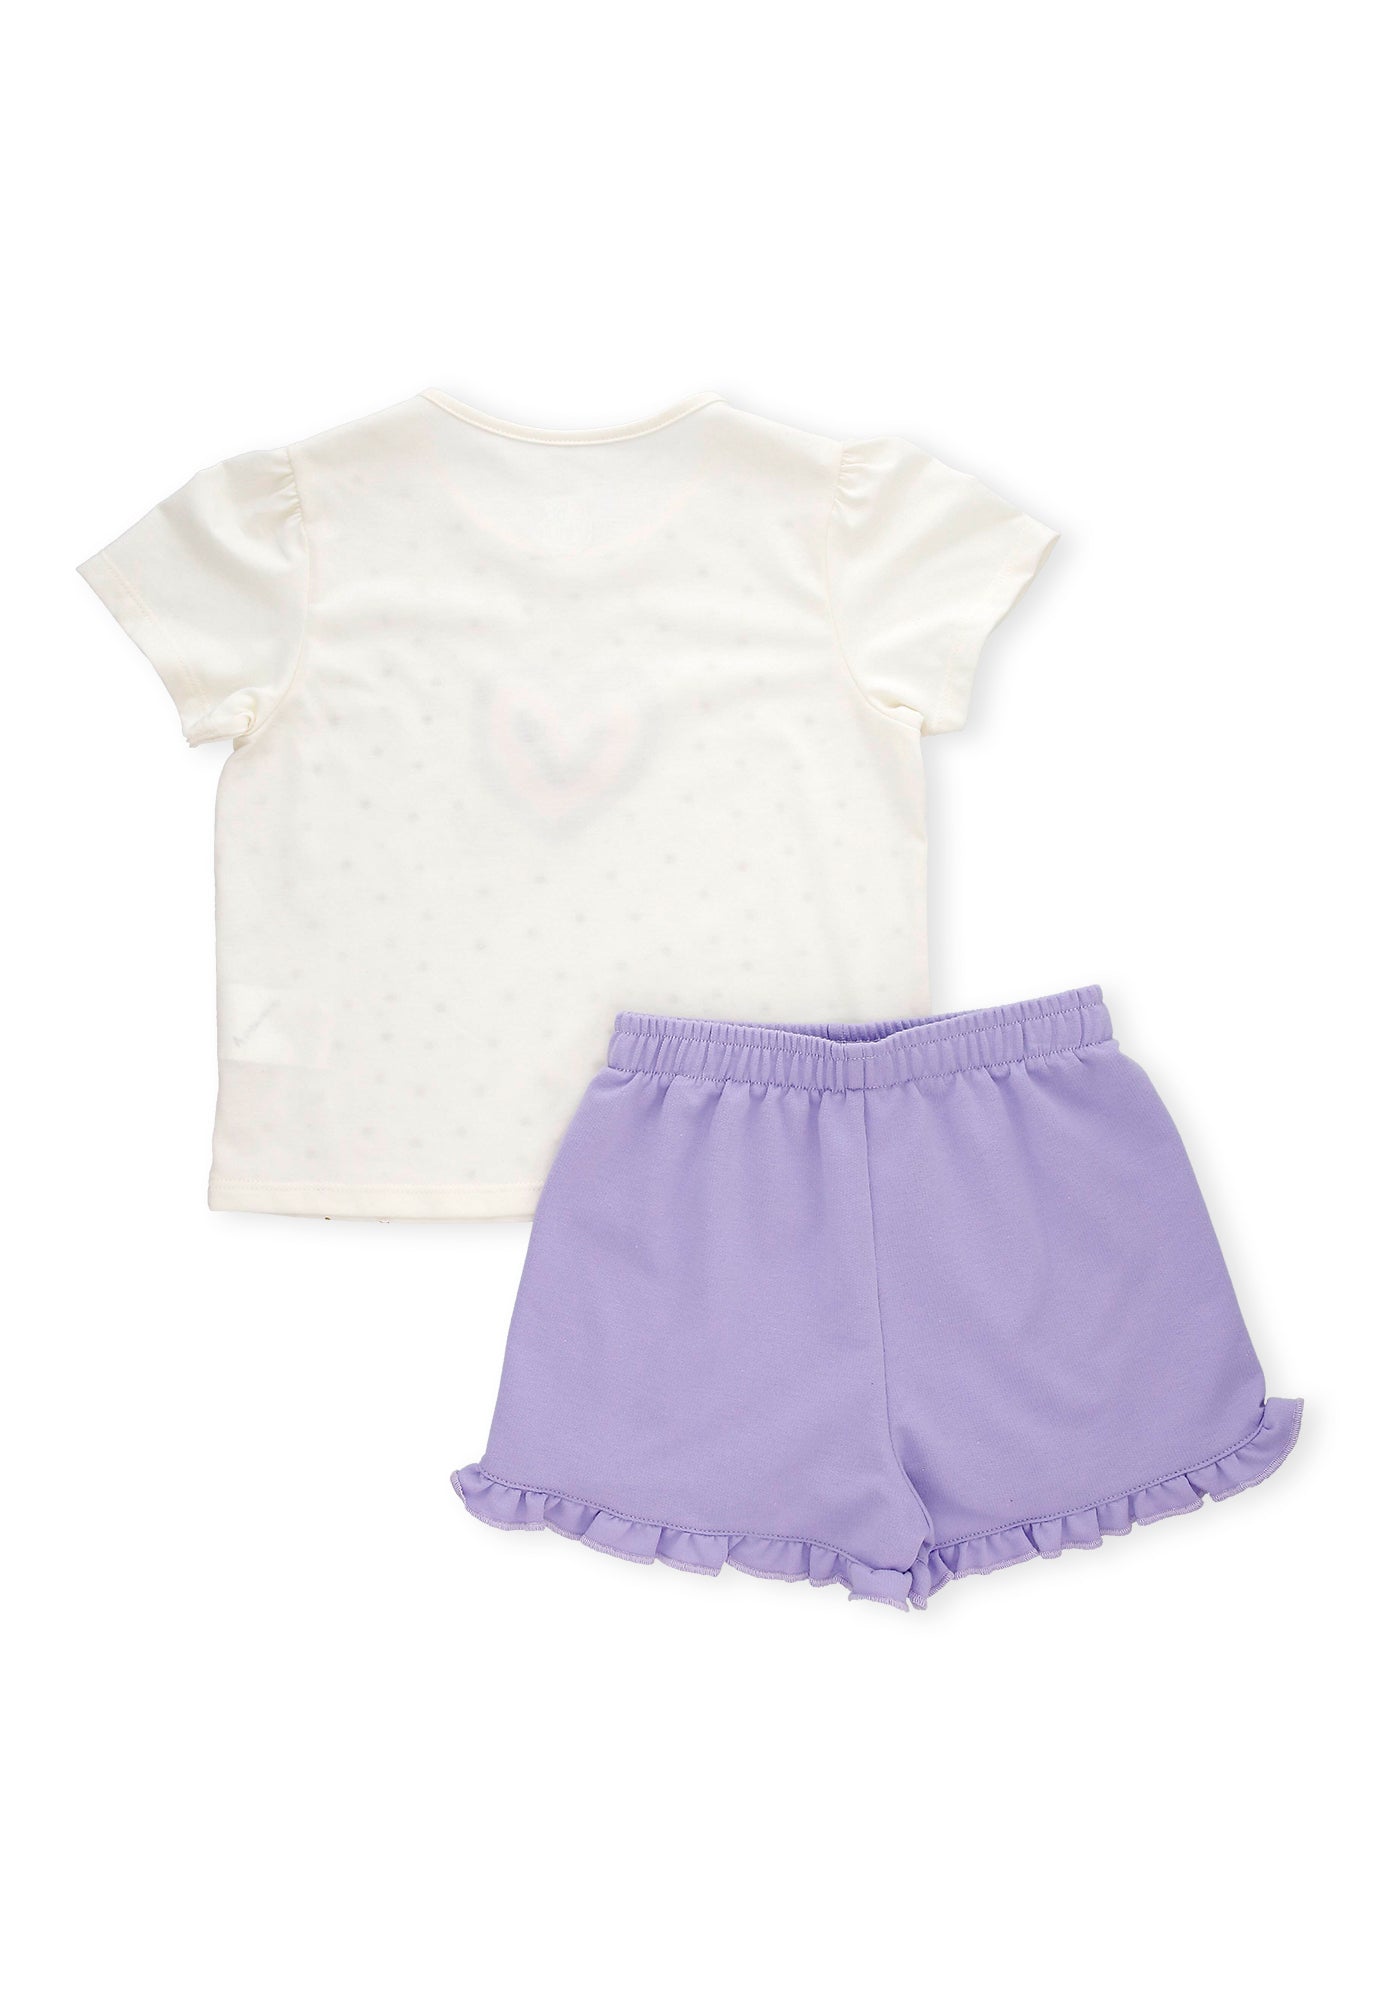 Conjunto de camiseta ivory estampada manga corta y short morado para bebé niña